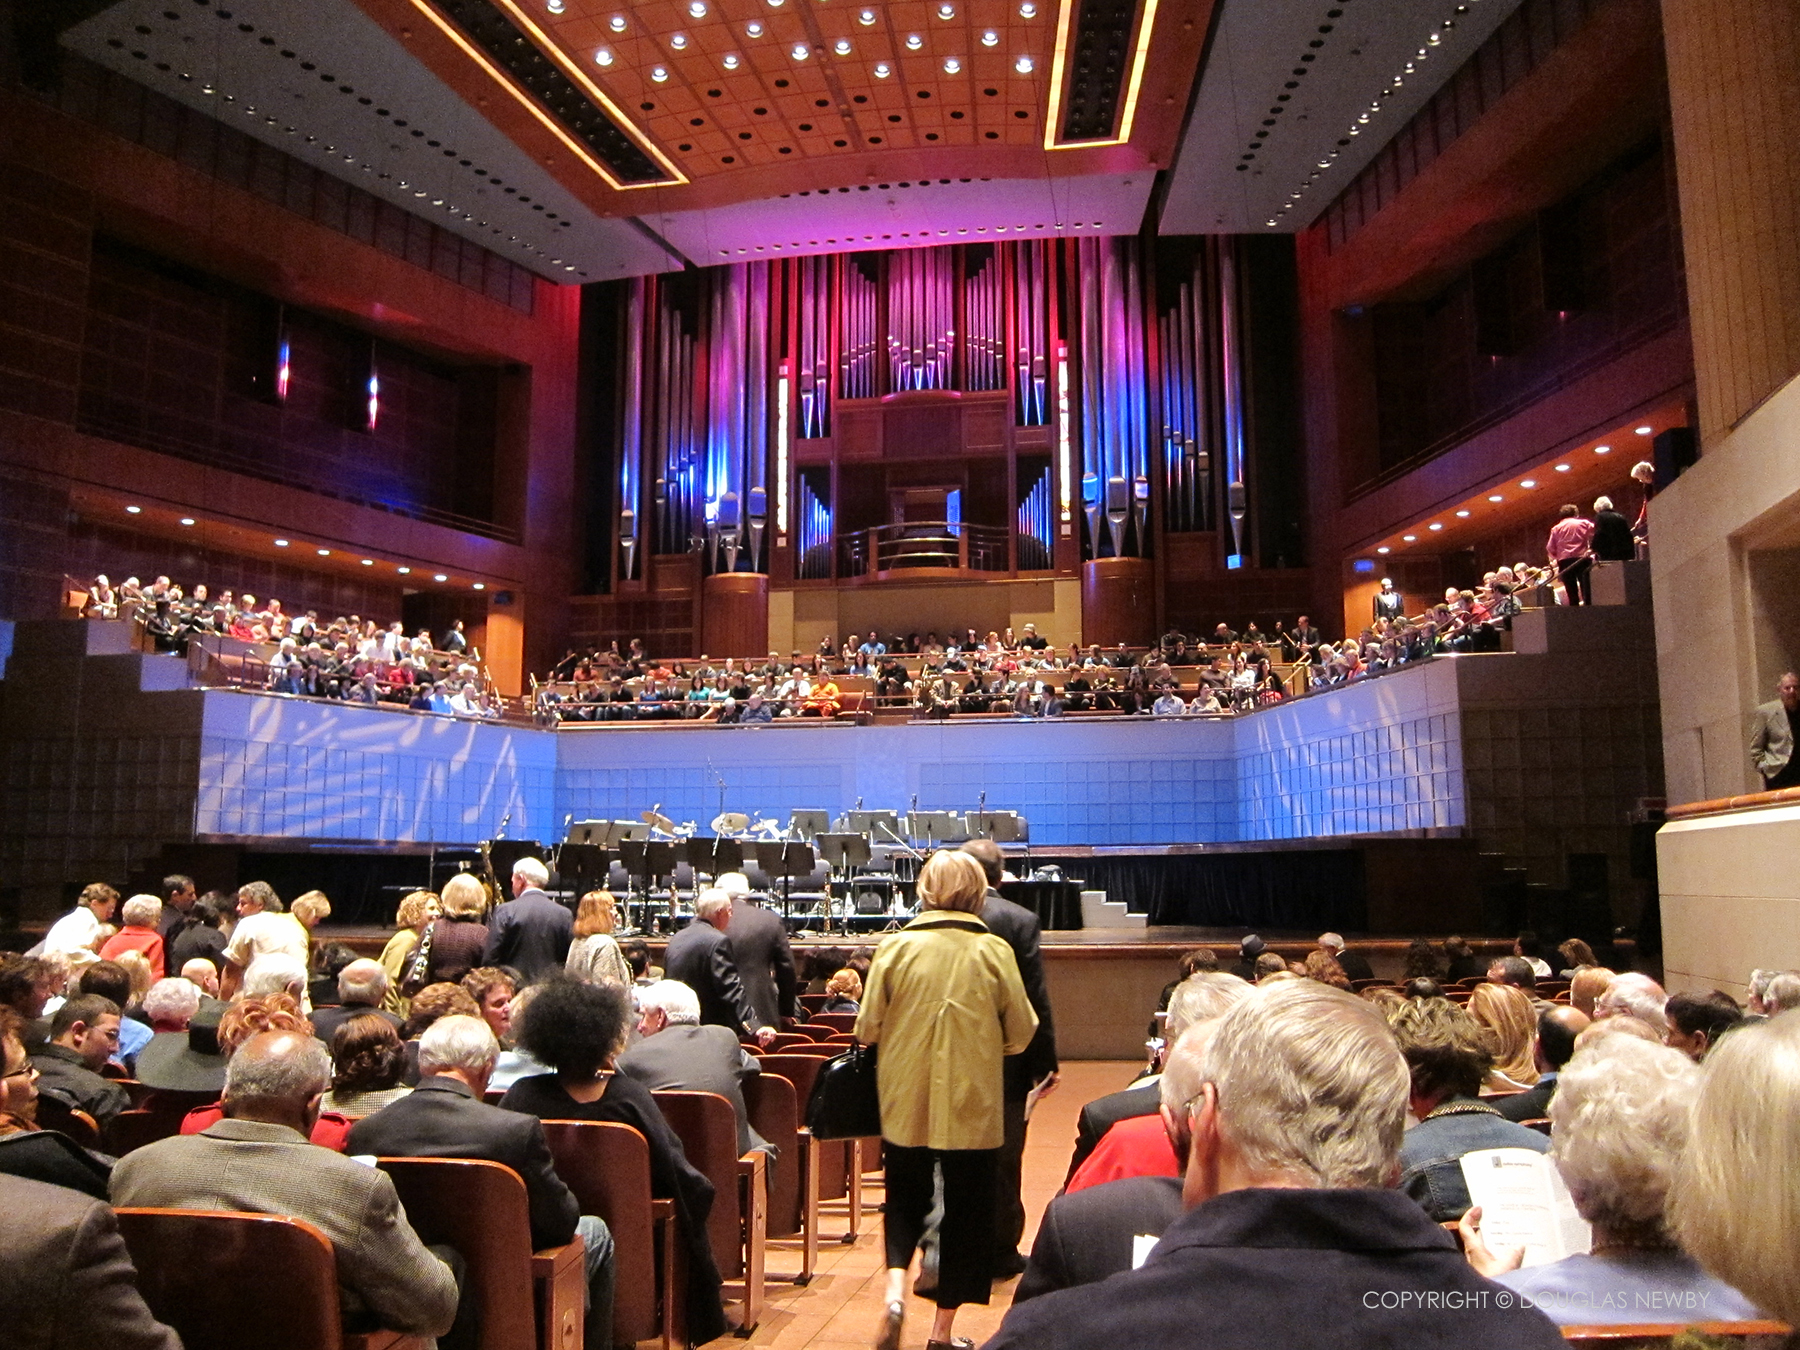 The Meyerson Symphony Center